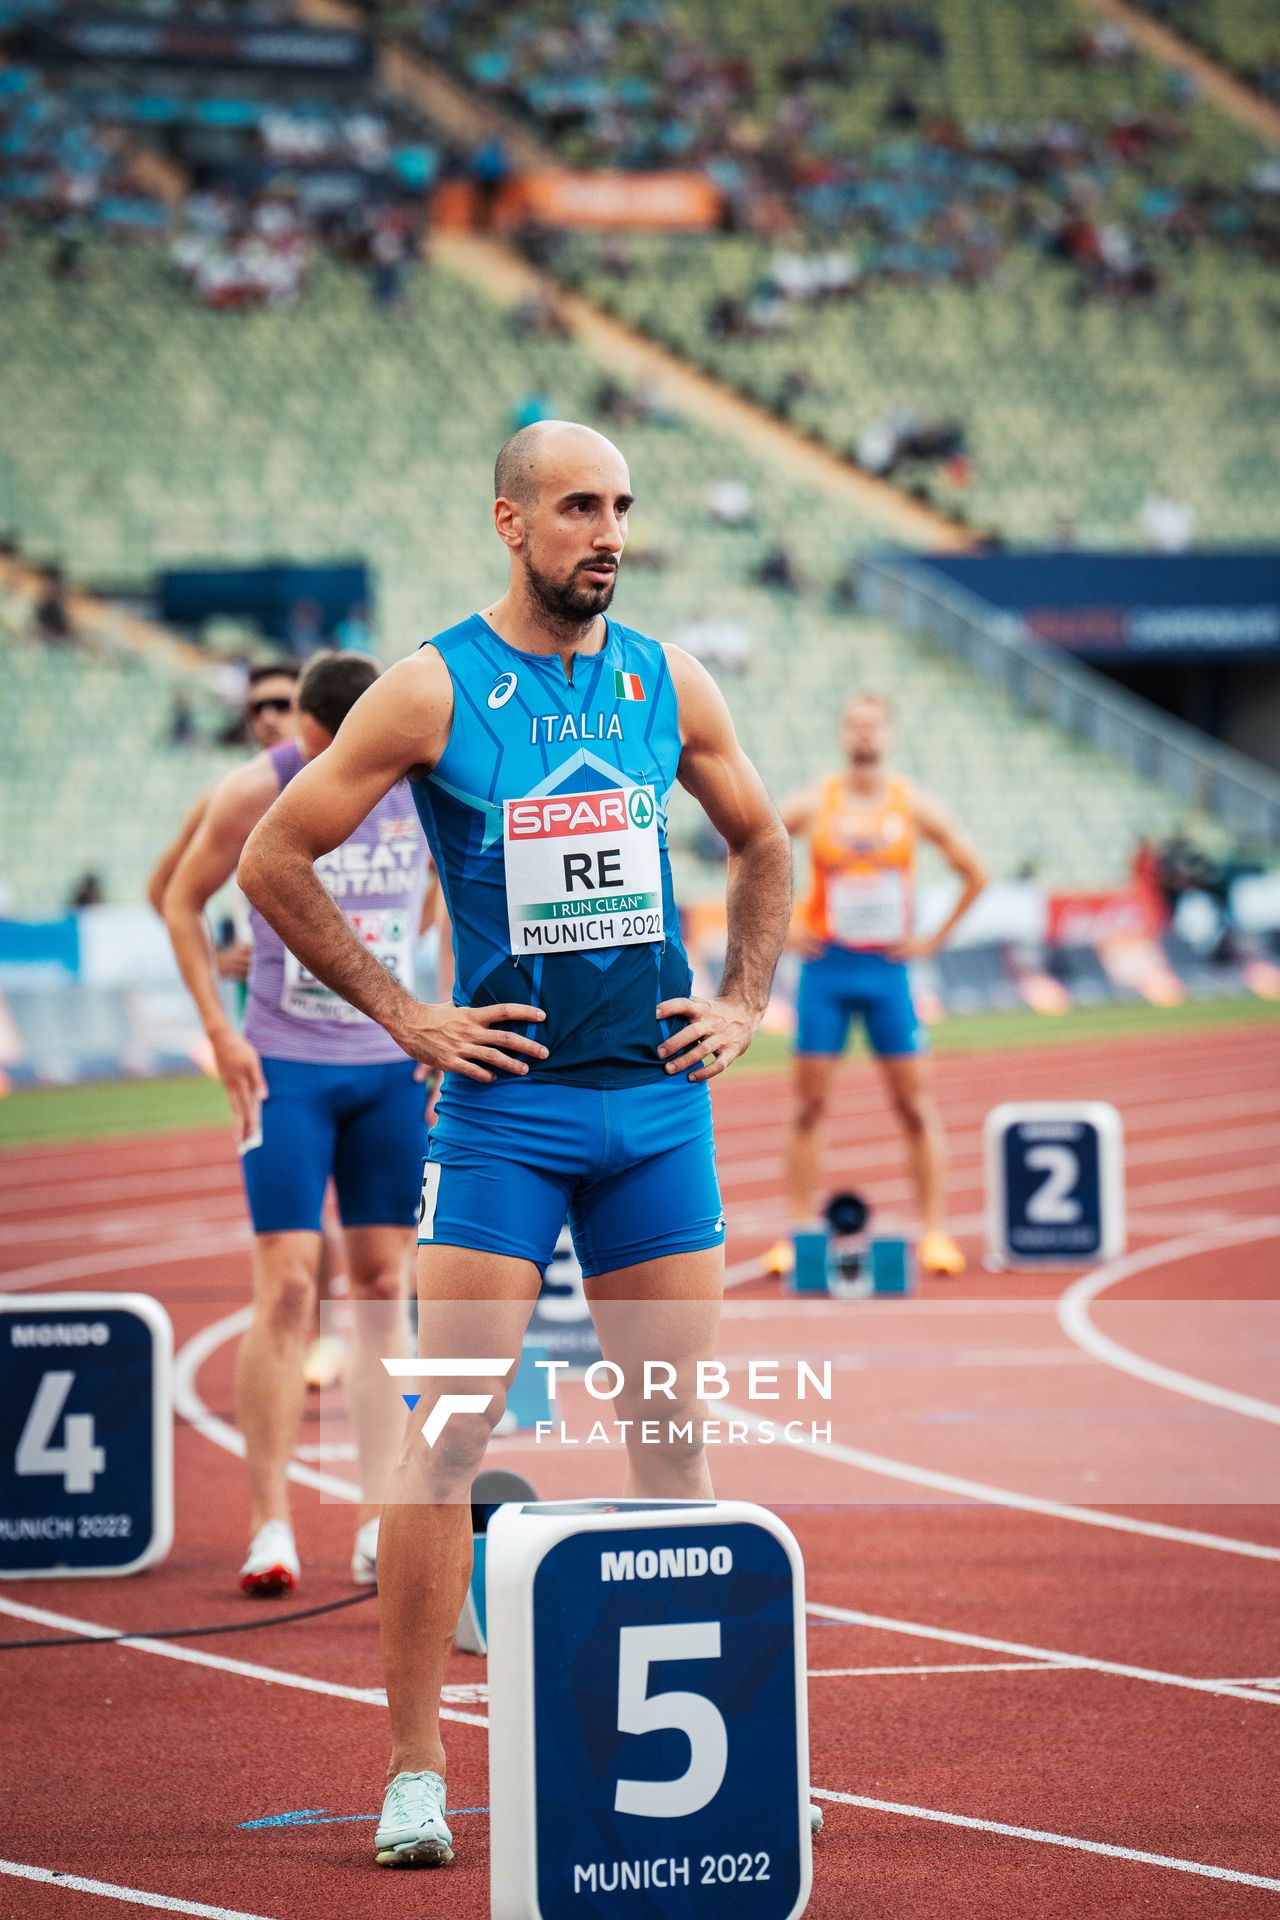 Davide Re (ITA) am 15.08.2022 bei den Leichtathletik-Europameisterschaften in Muenchen